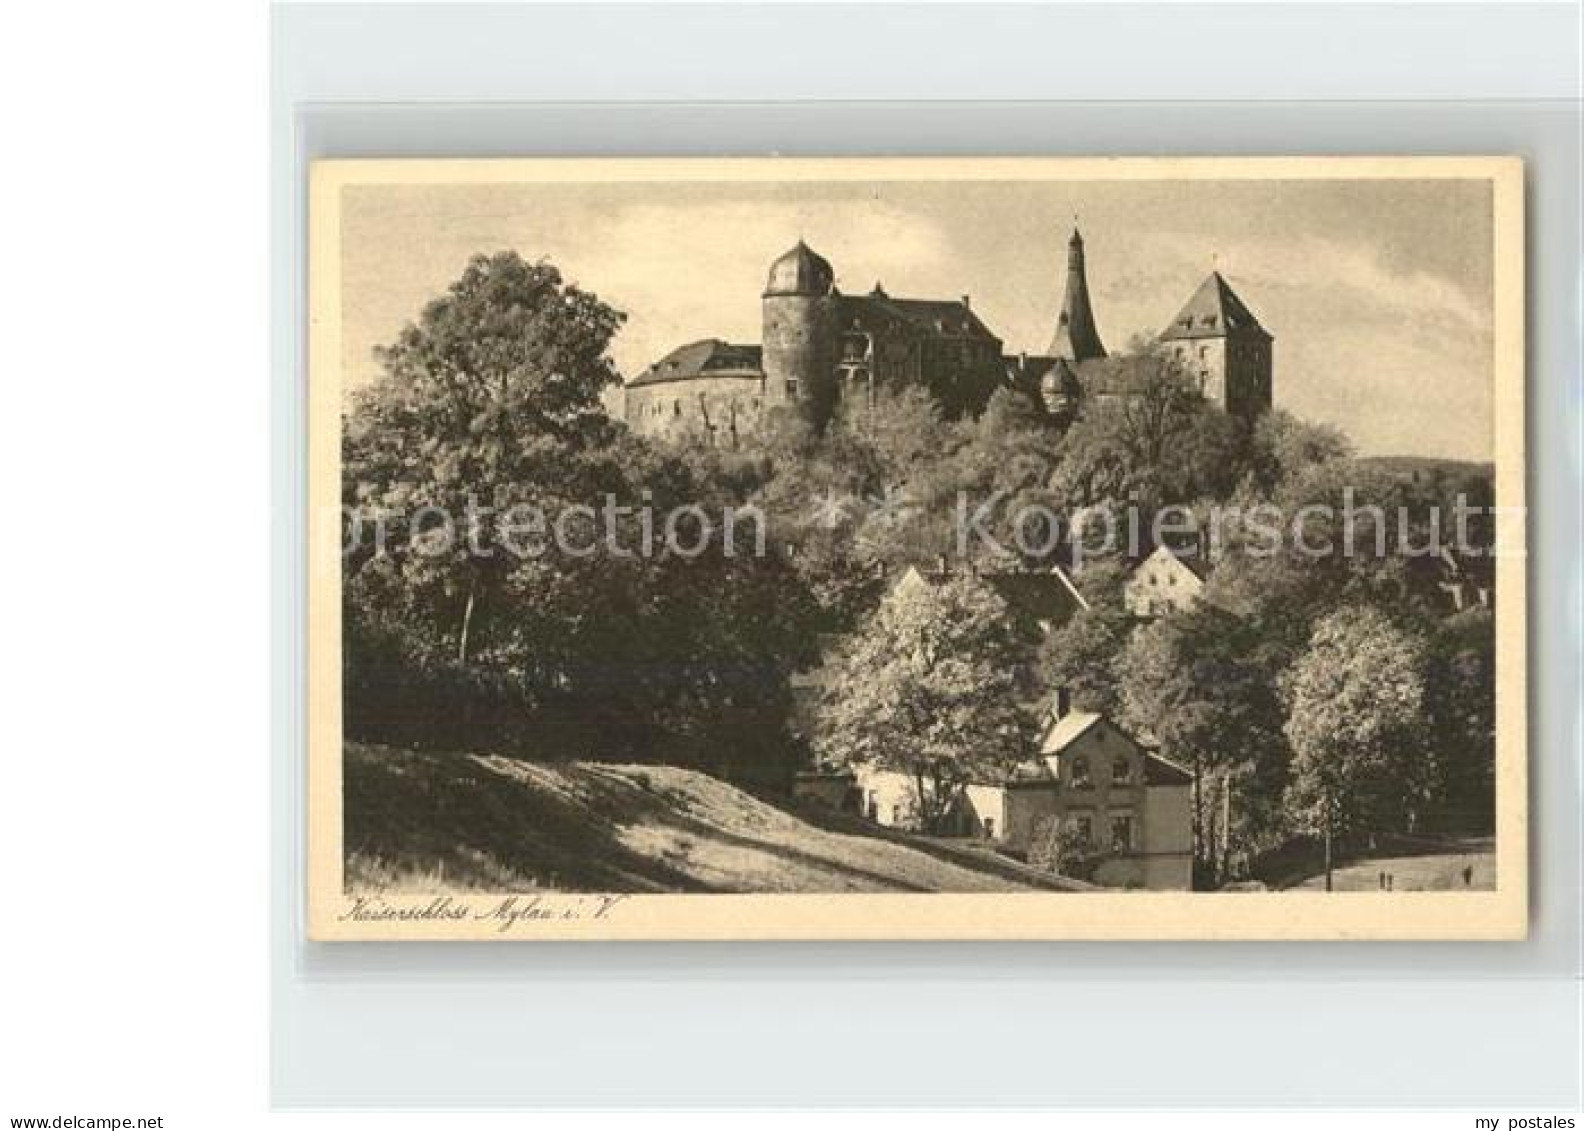 42214700 Mylau Kaiserschloss Altdeutsche Schlossschaenke Kupfertiefdruck Mylau - Mylau